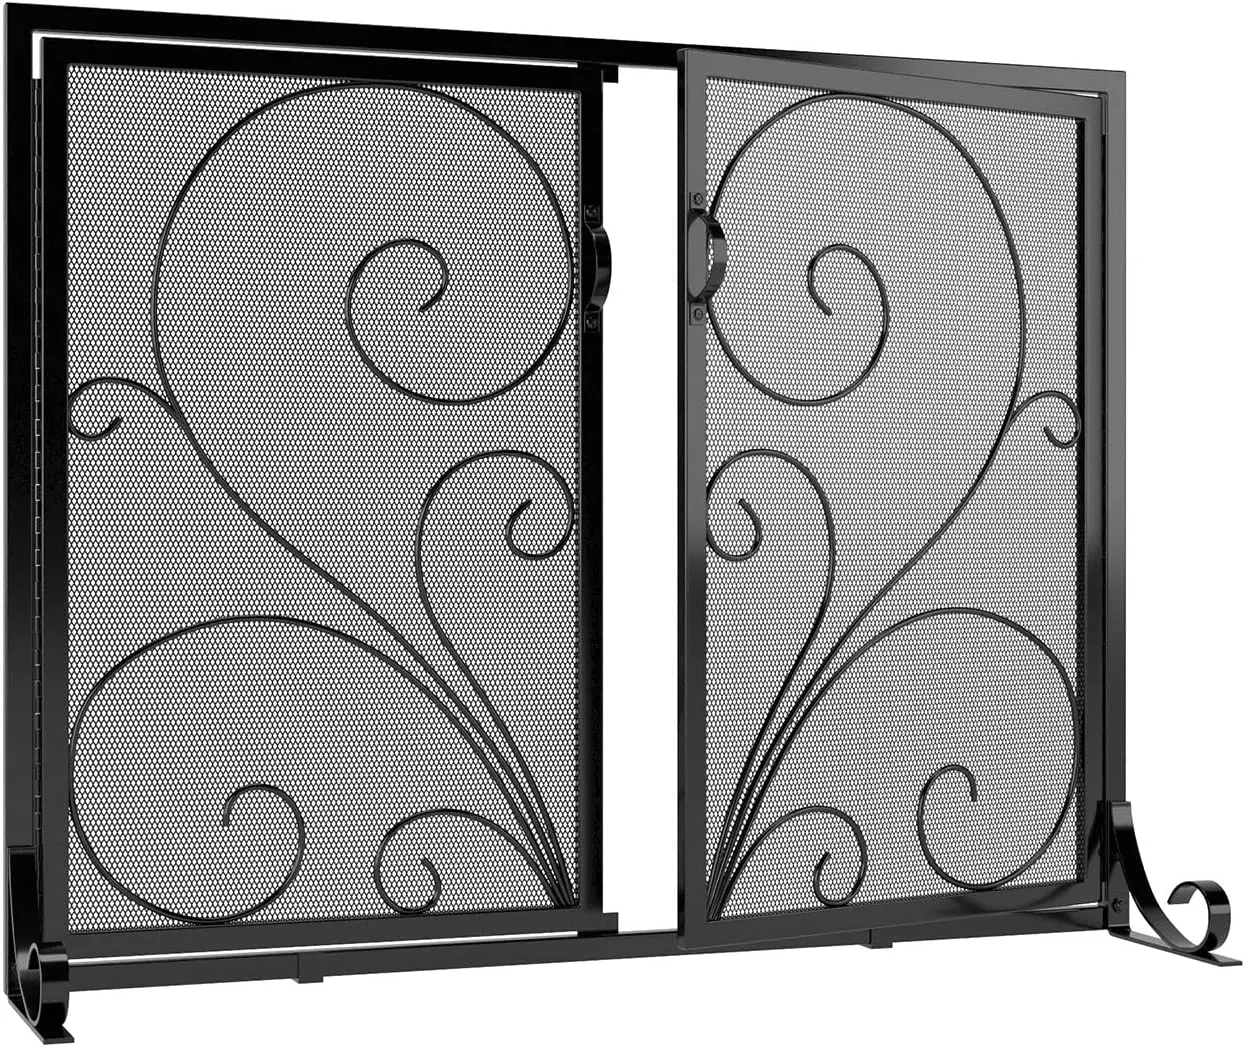 Chaîne avec porte peinte, étincelle décorative, traction pliante, maille en verre trempé, vitrail, treillis métallique, écran de cheminée en métal